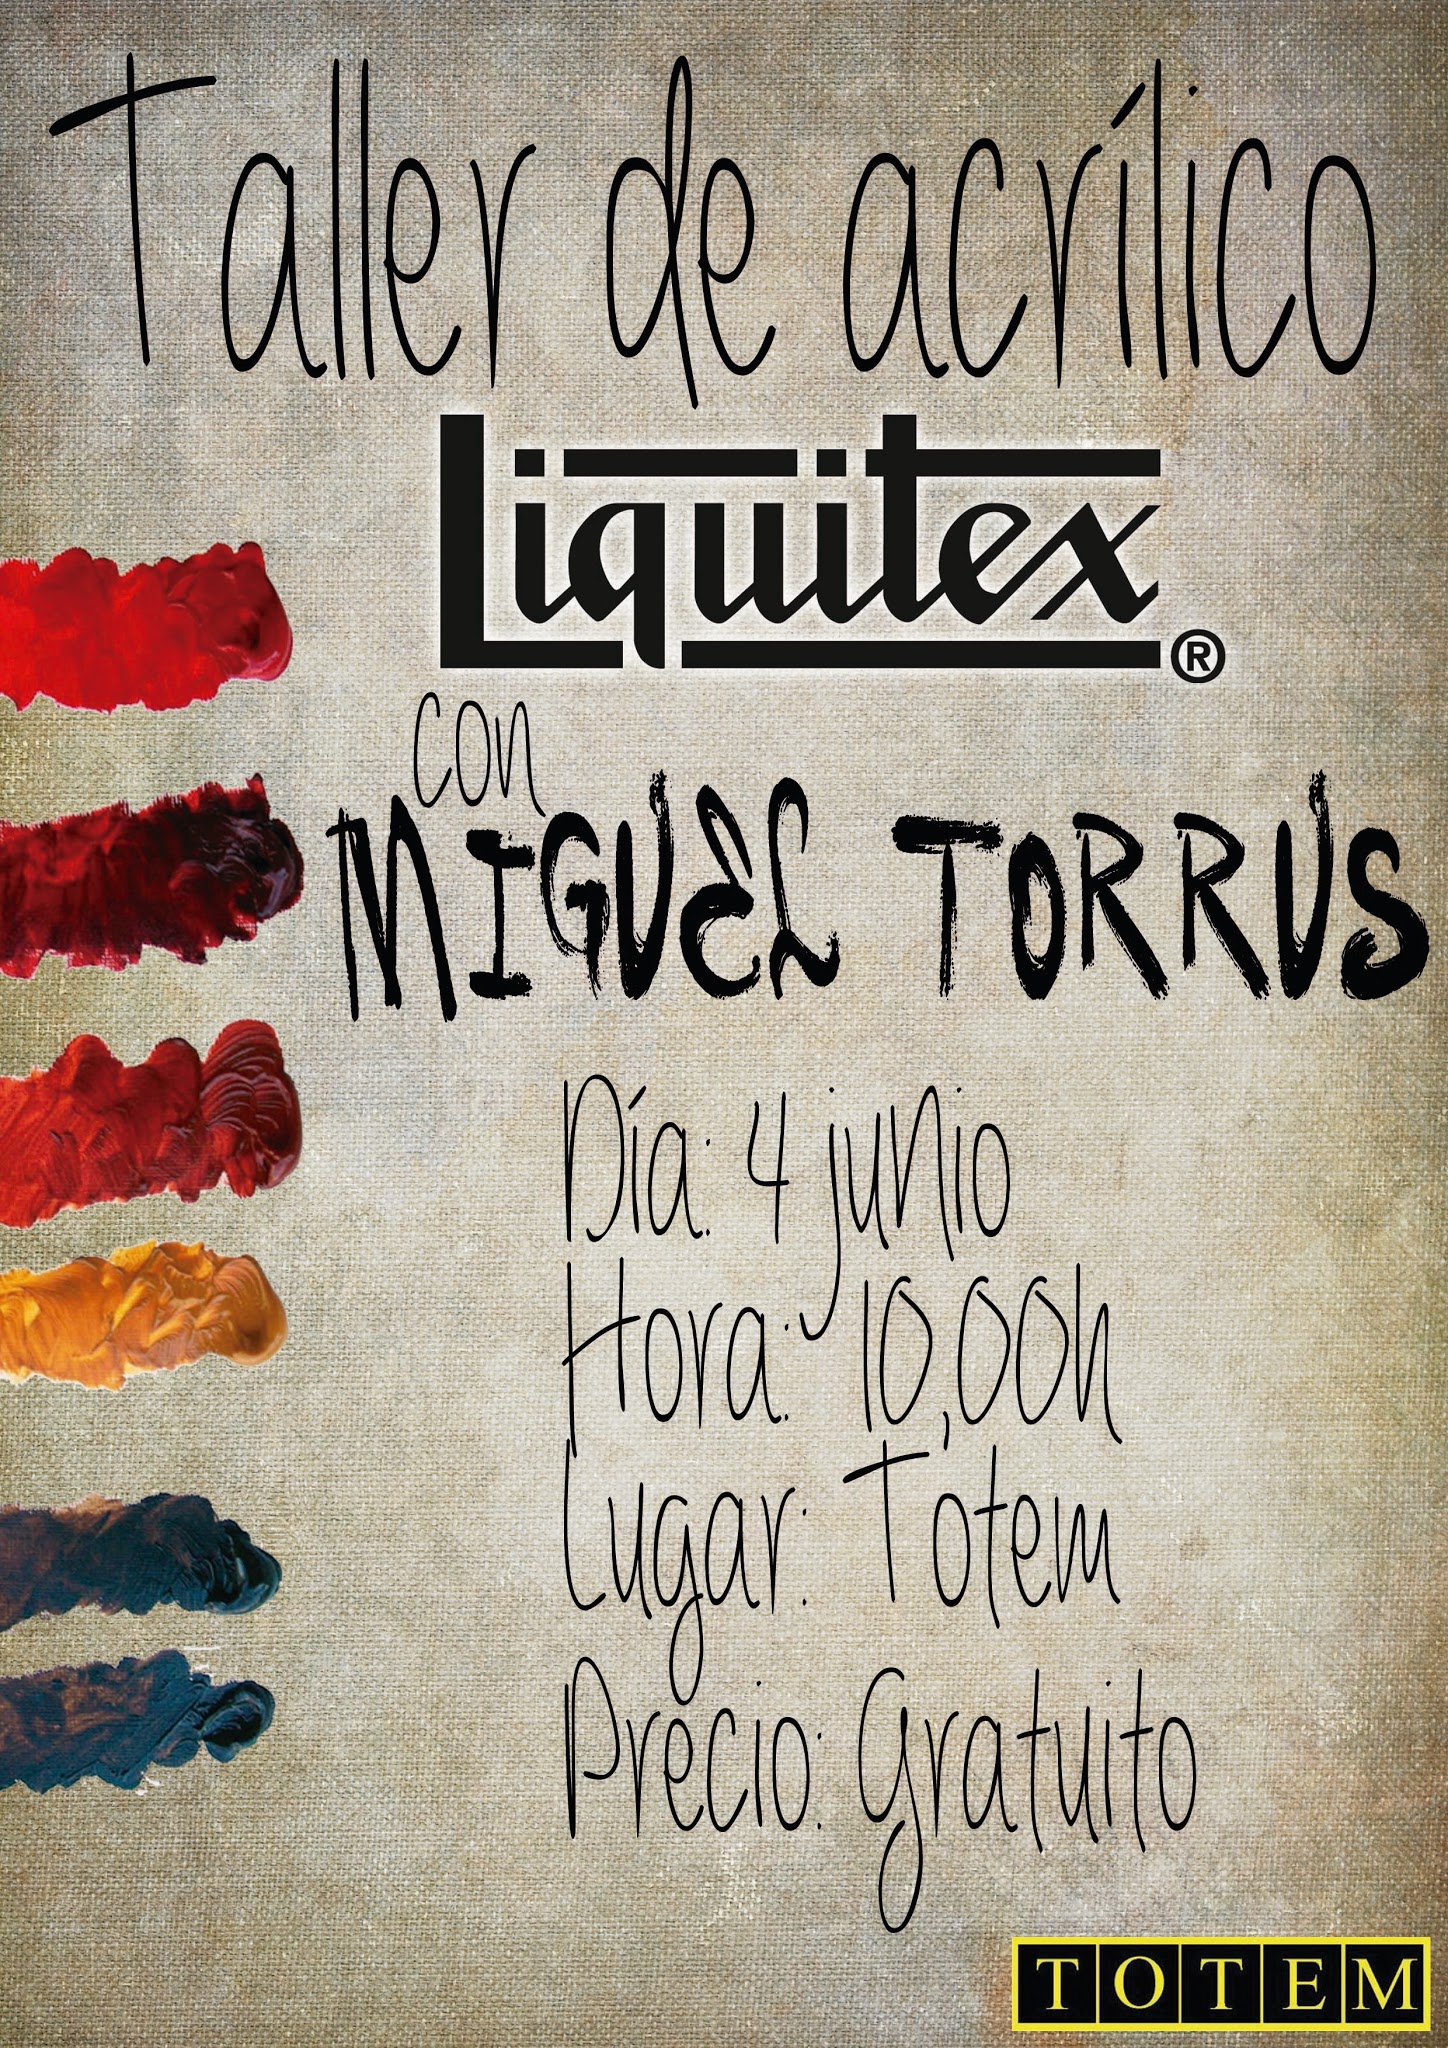 Taller de Acrílico Liquitex impartido por Miguel Torrus